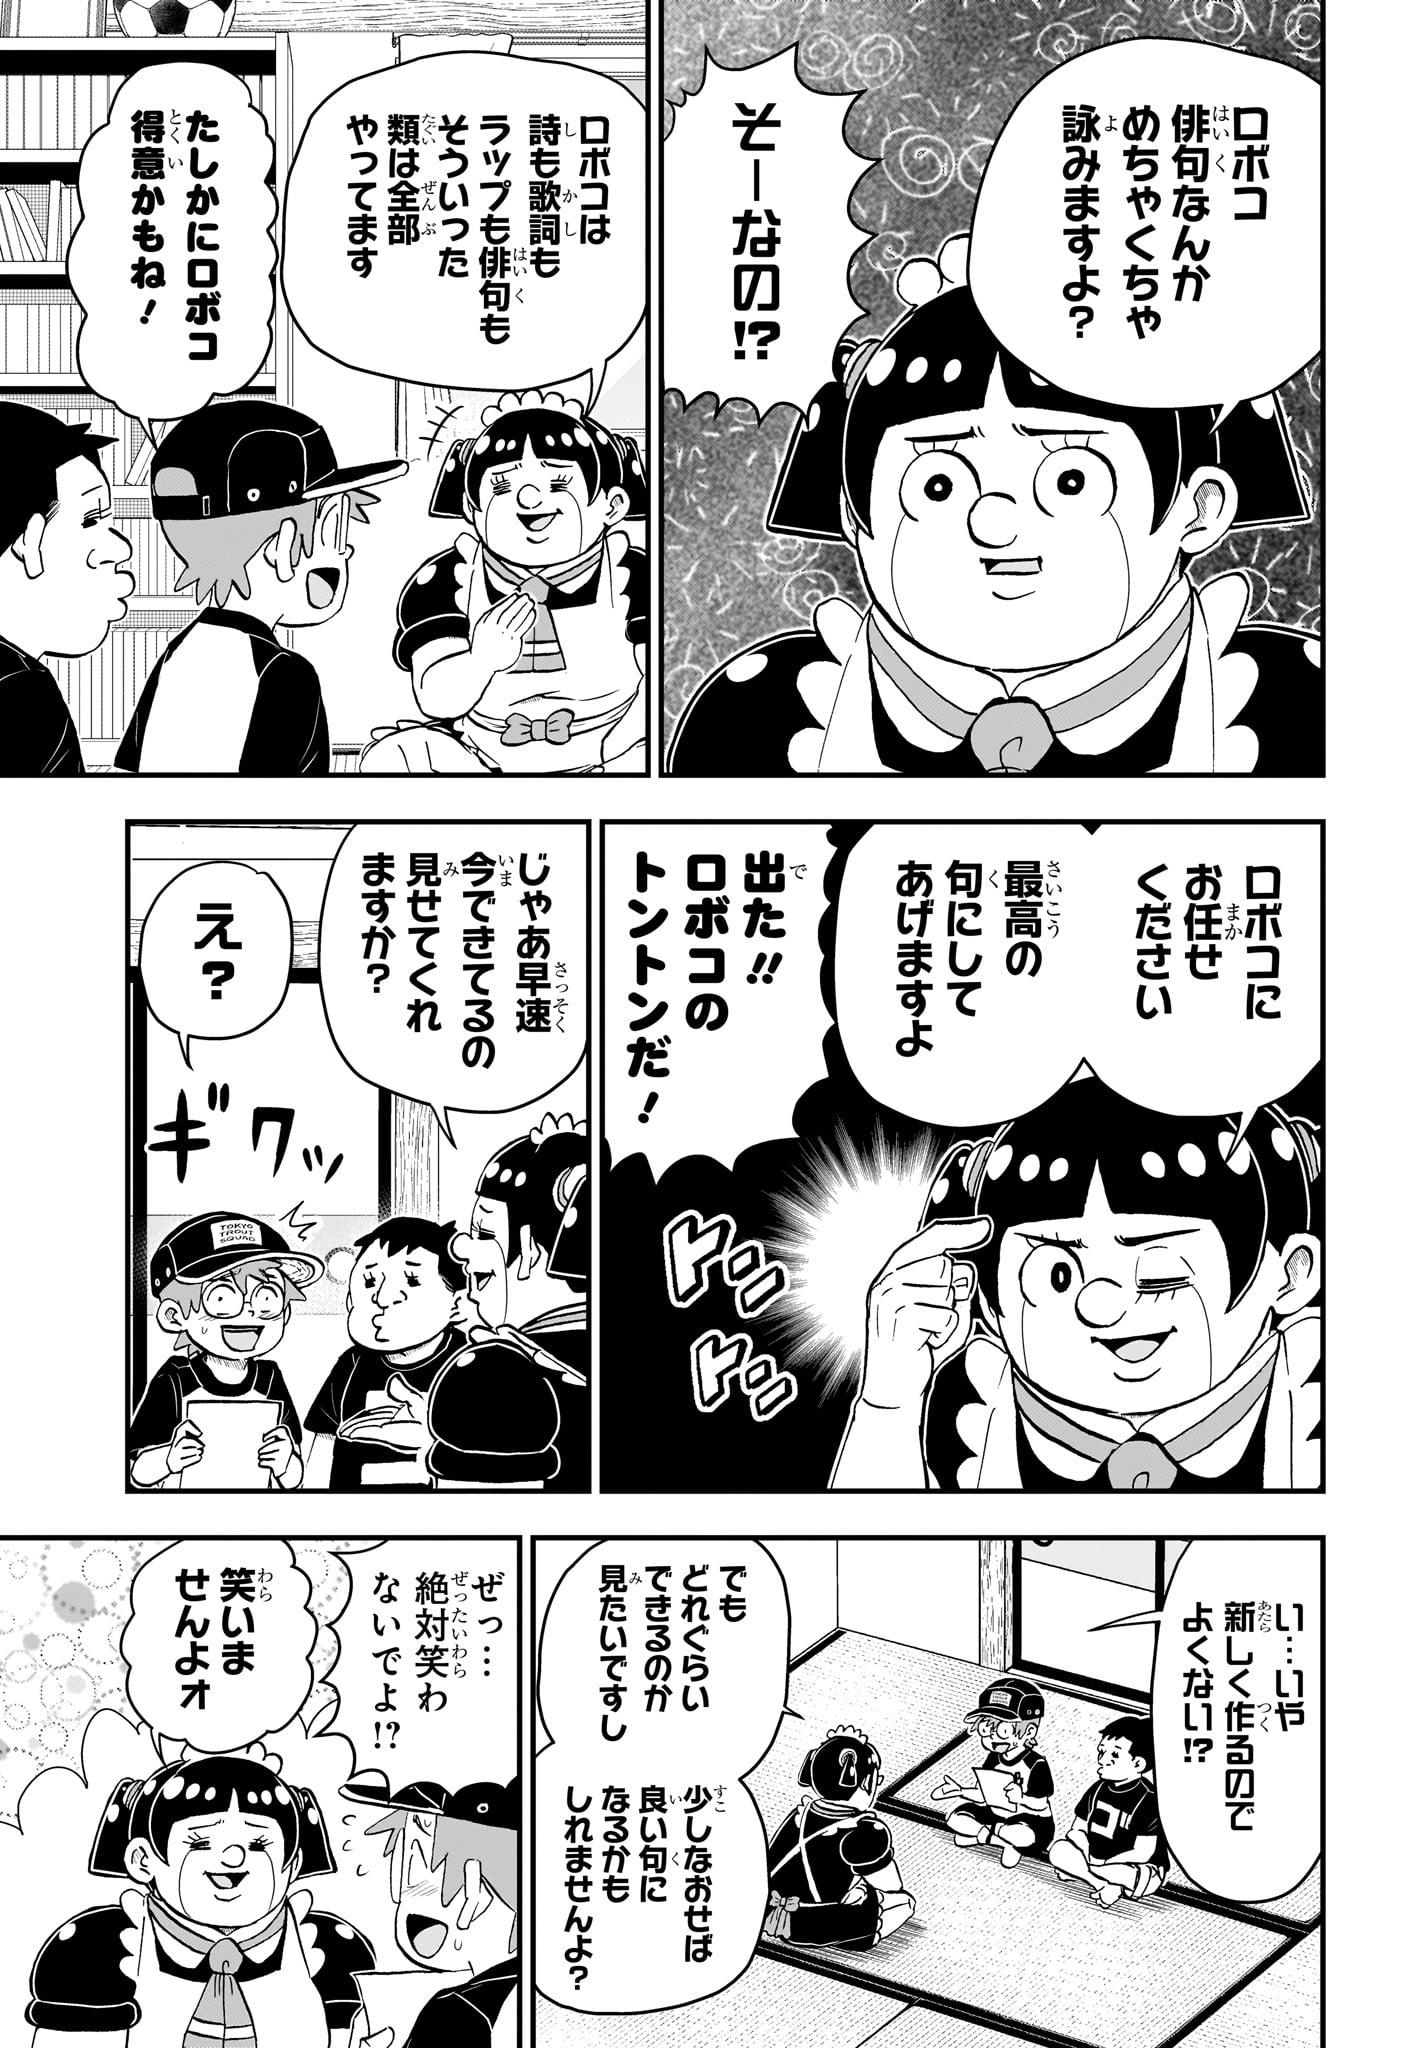 Boku to Roboko - Chapter 192 - Page 3